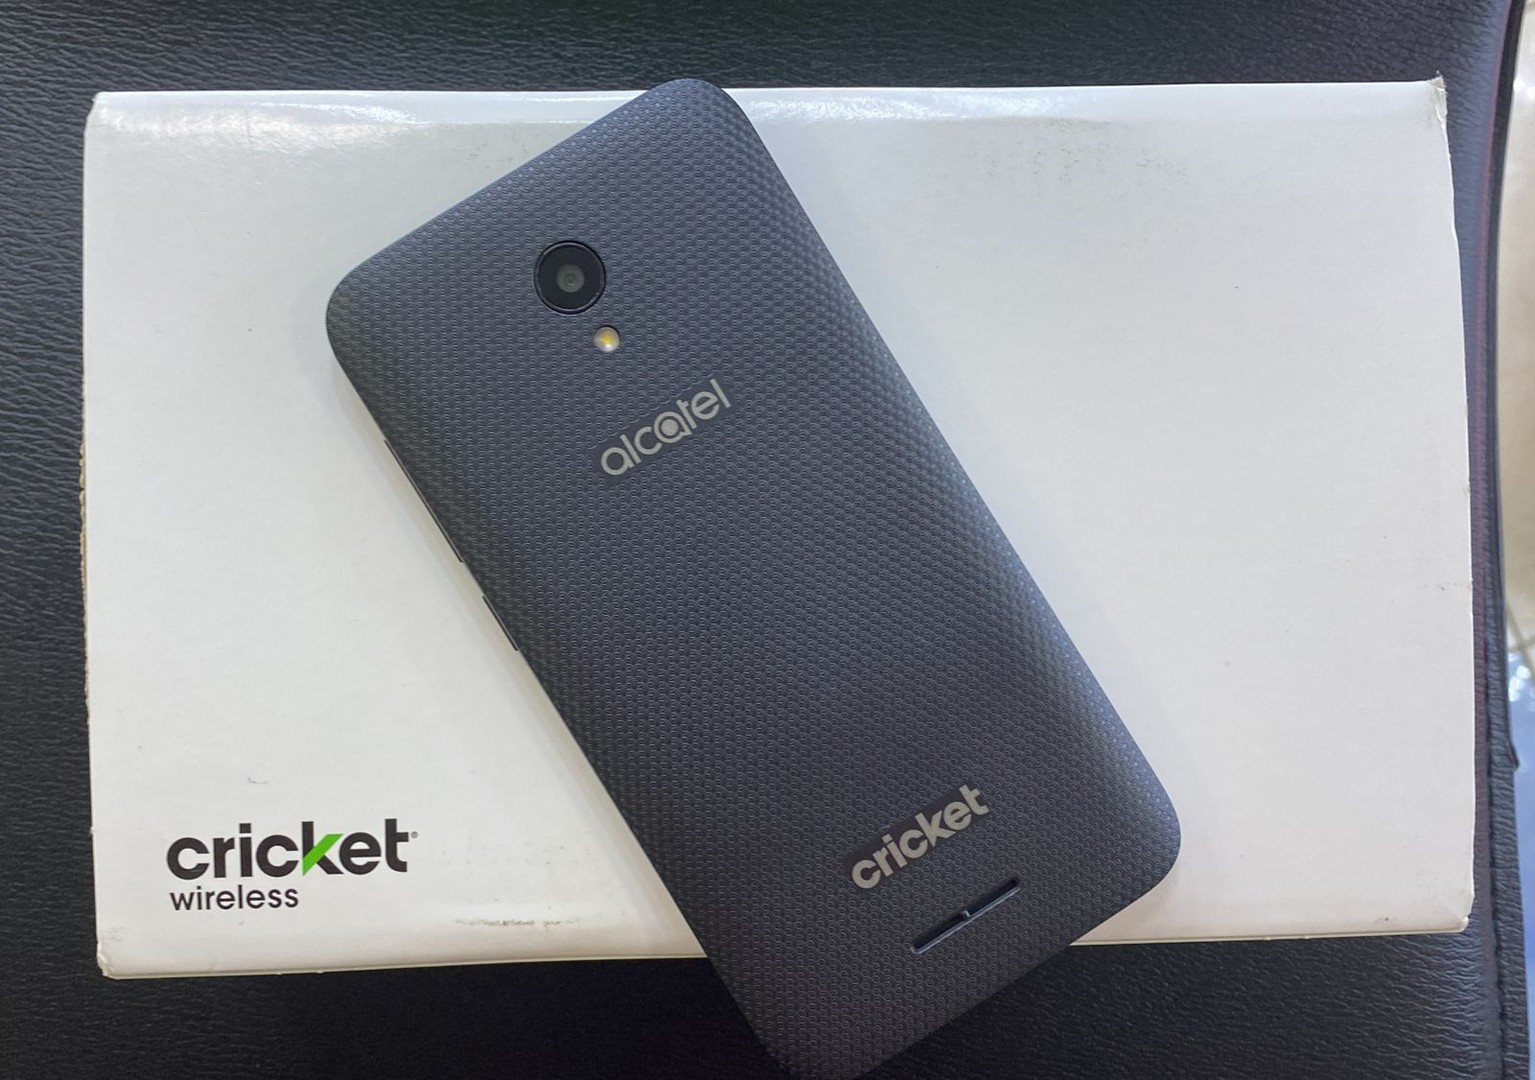 celulares y tabletas - ALCATEL cricket nuevo 
